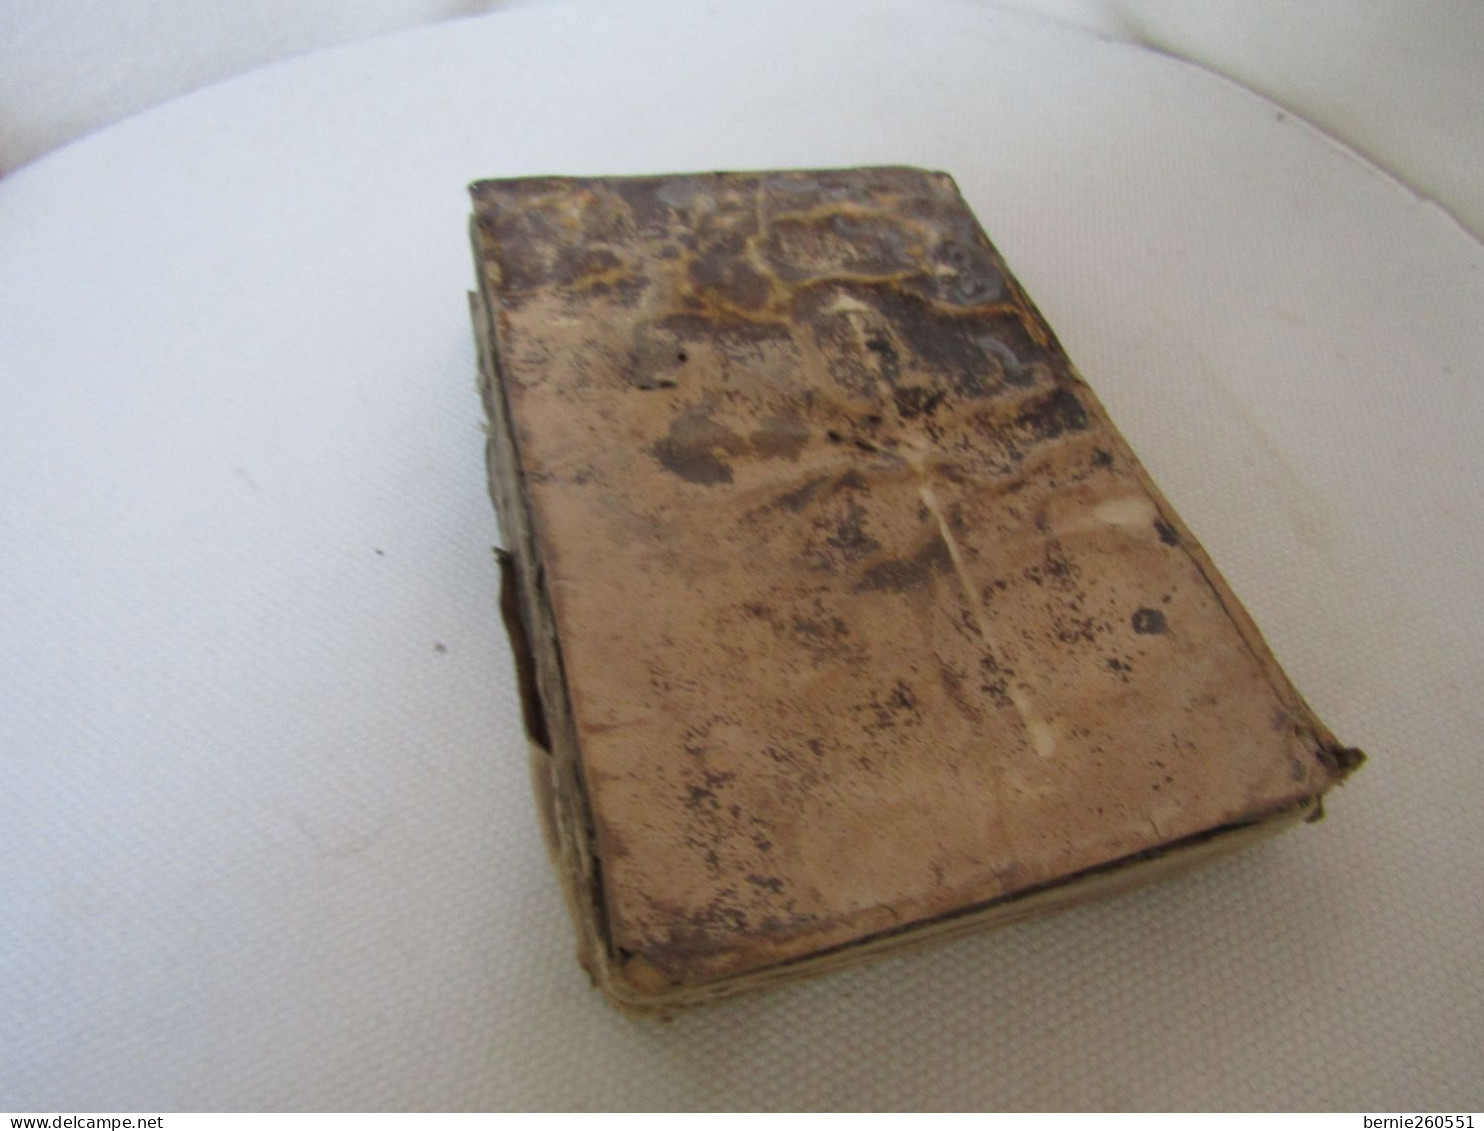 Antique Livre Moeder Godts De 1629, Vieux Flamand - Oud